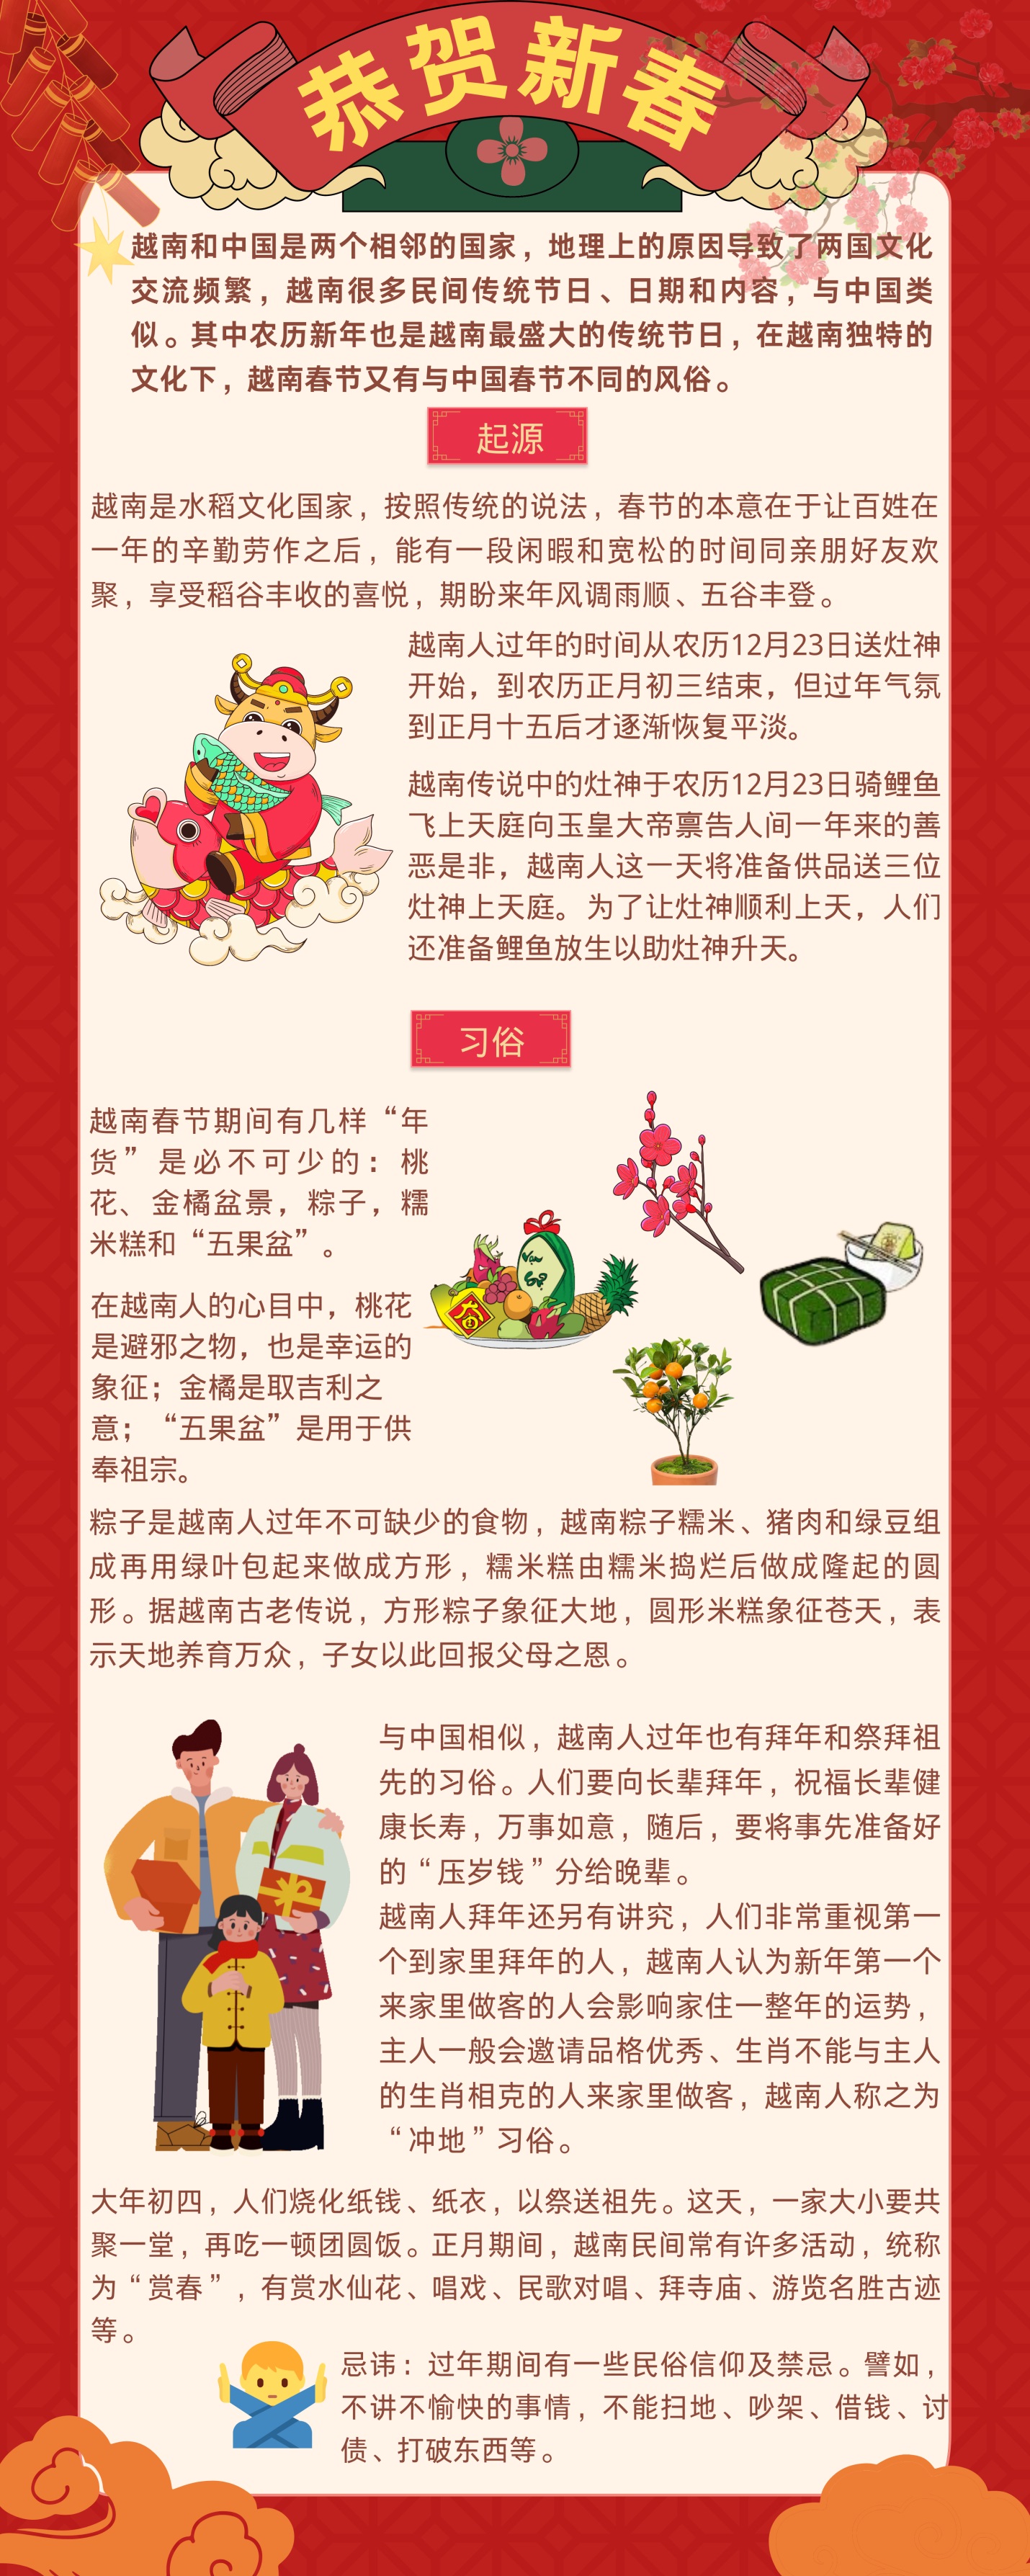 越南春节与中国春节的不同风俗 image